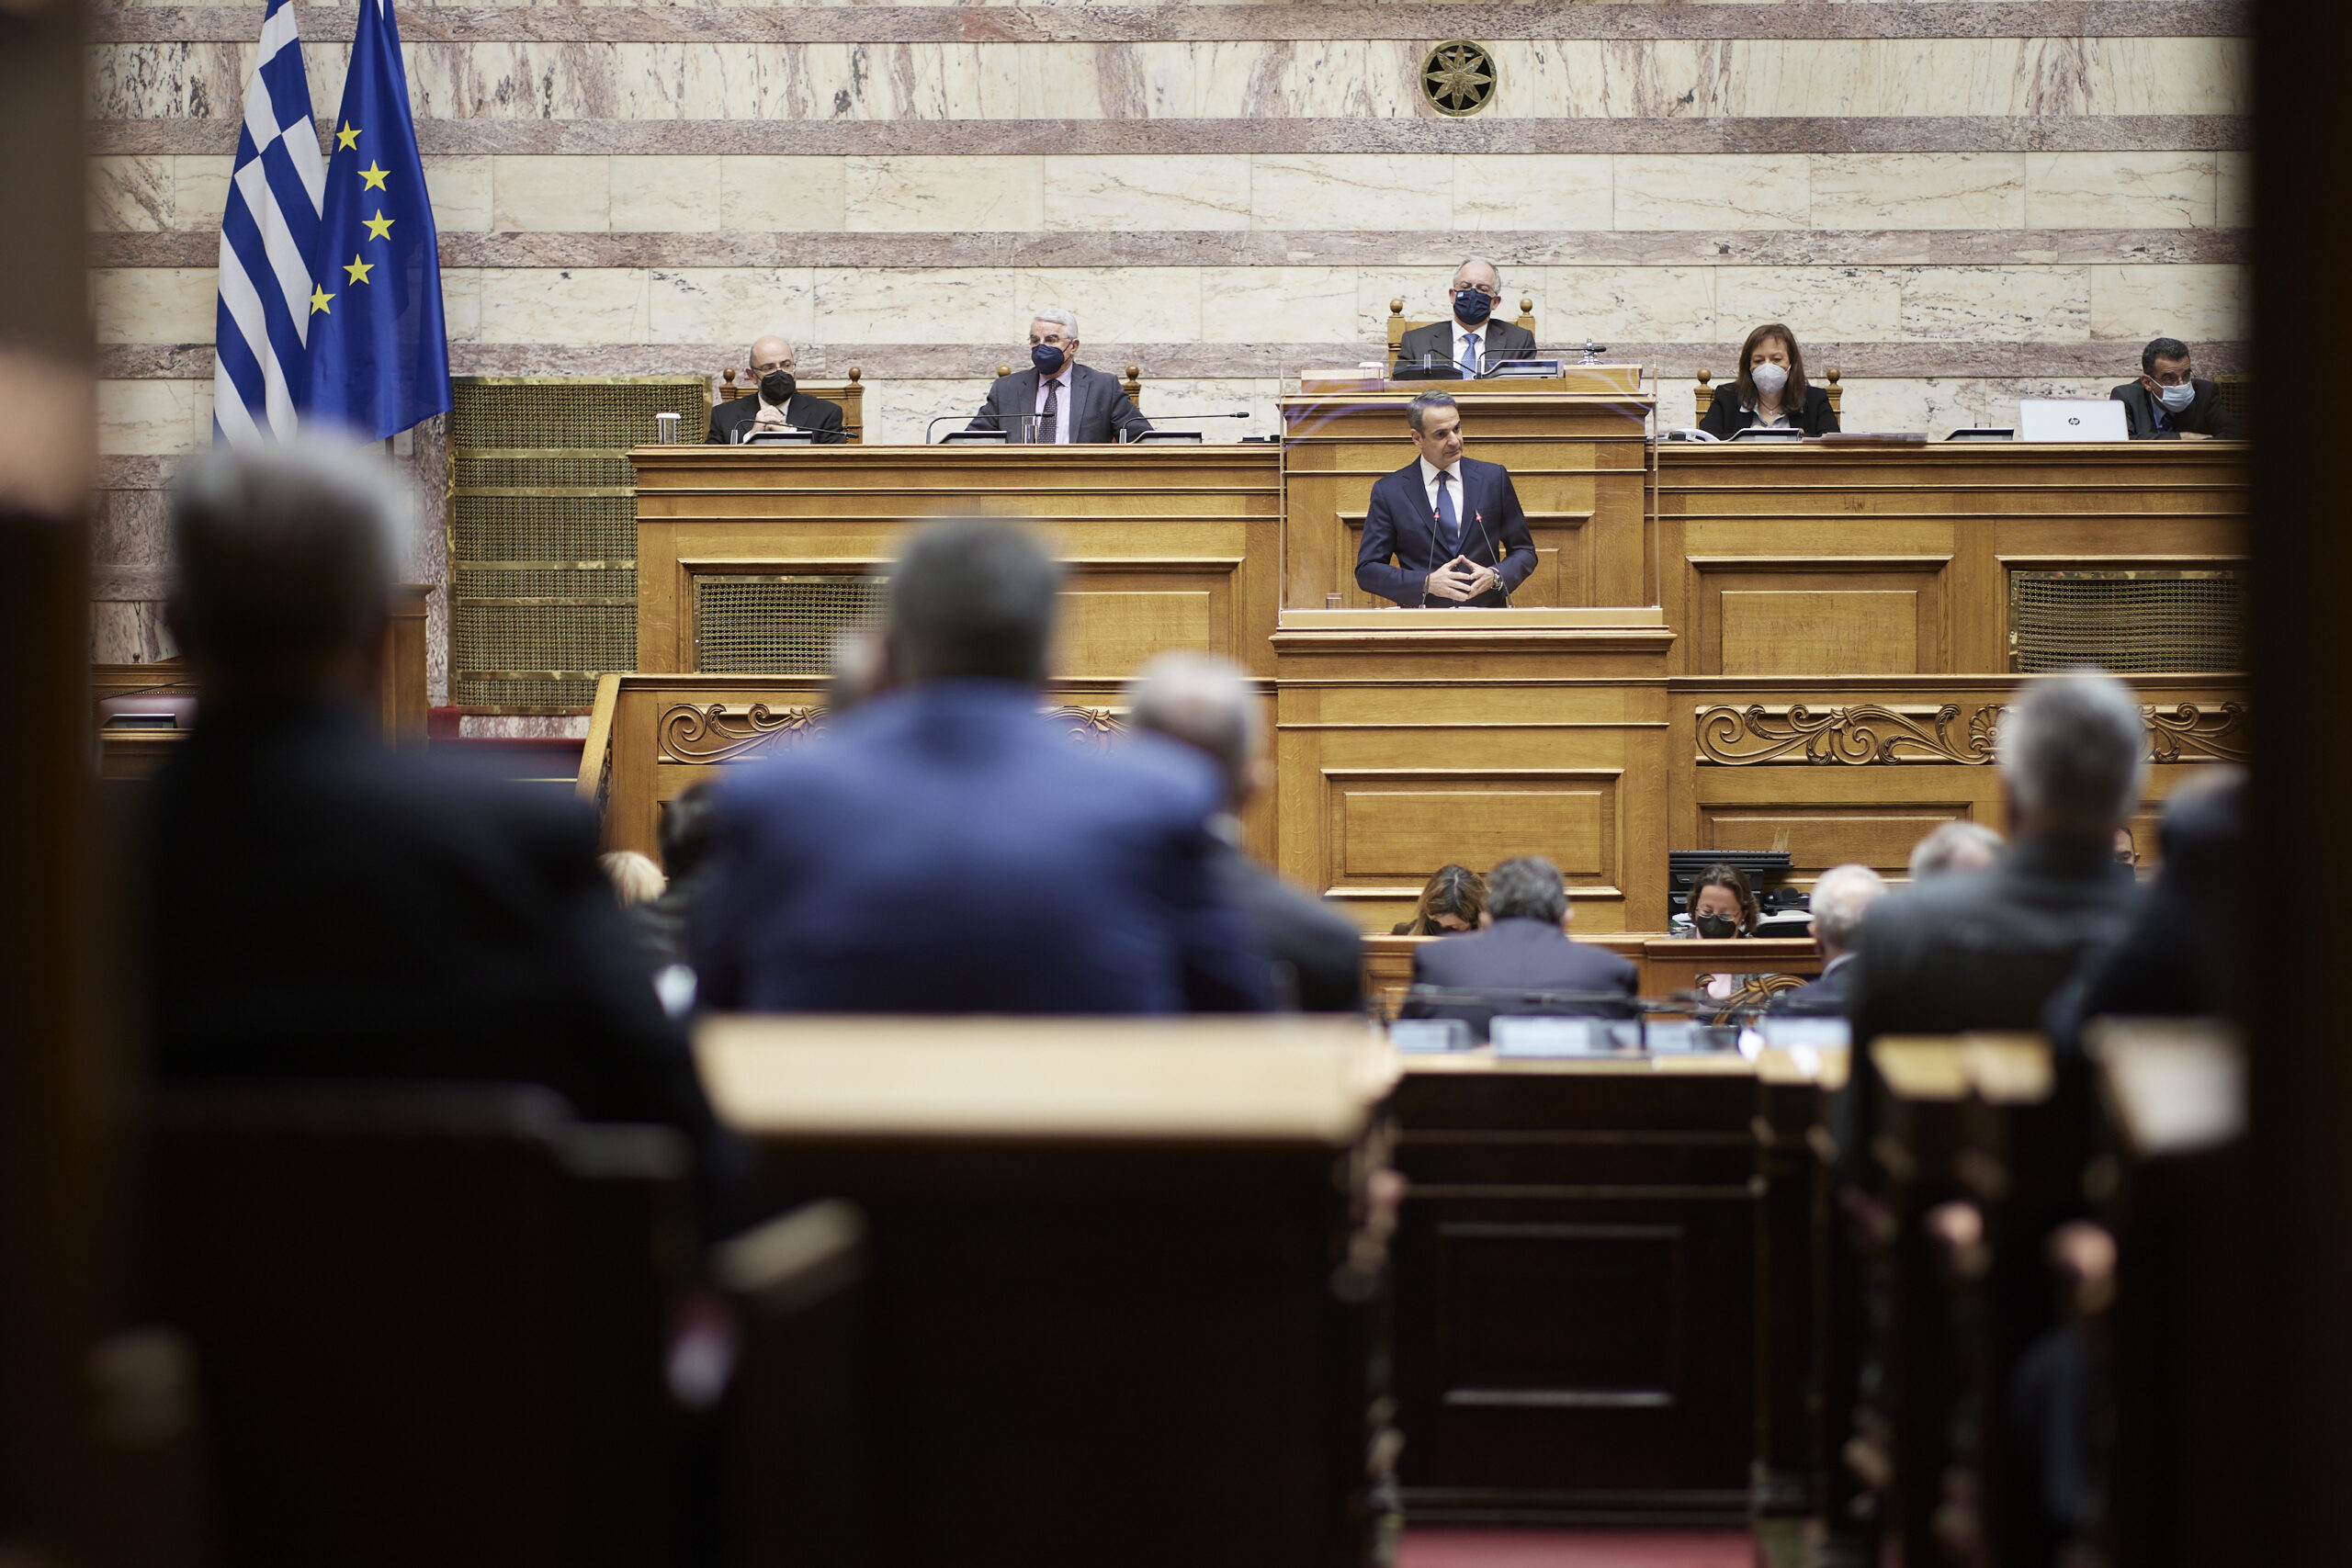 Ομιλία του Πρωθυπουργού Κυριάκου Μητσοτάκη στη Βουλή σχετικά με την κρίση στην Ουκρανία και τις επιπτώσεις για την Ελλάδα